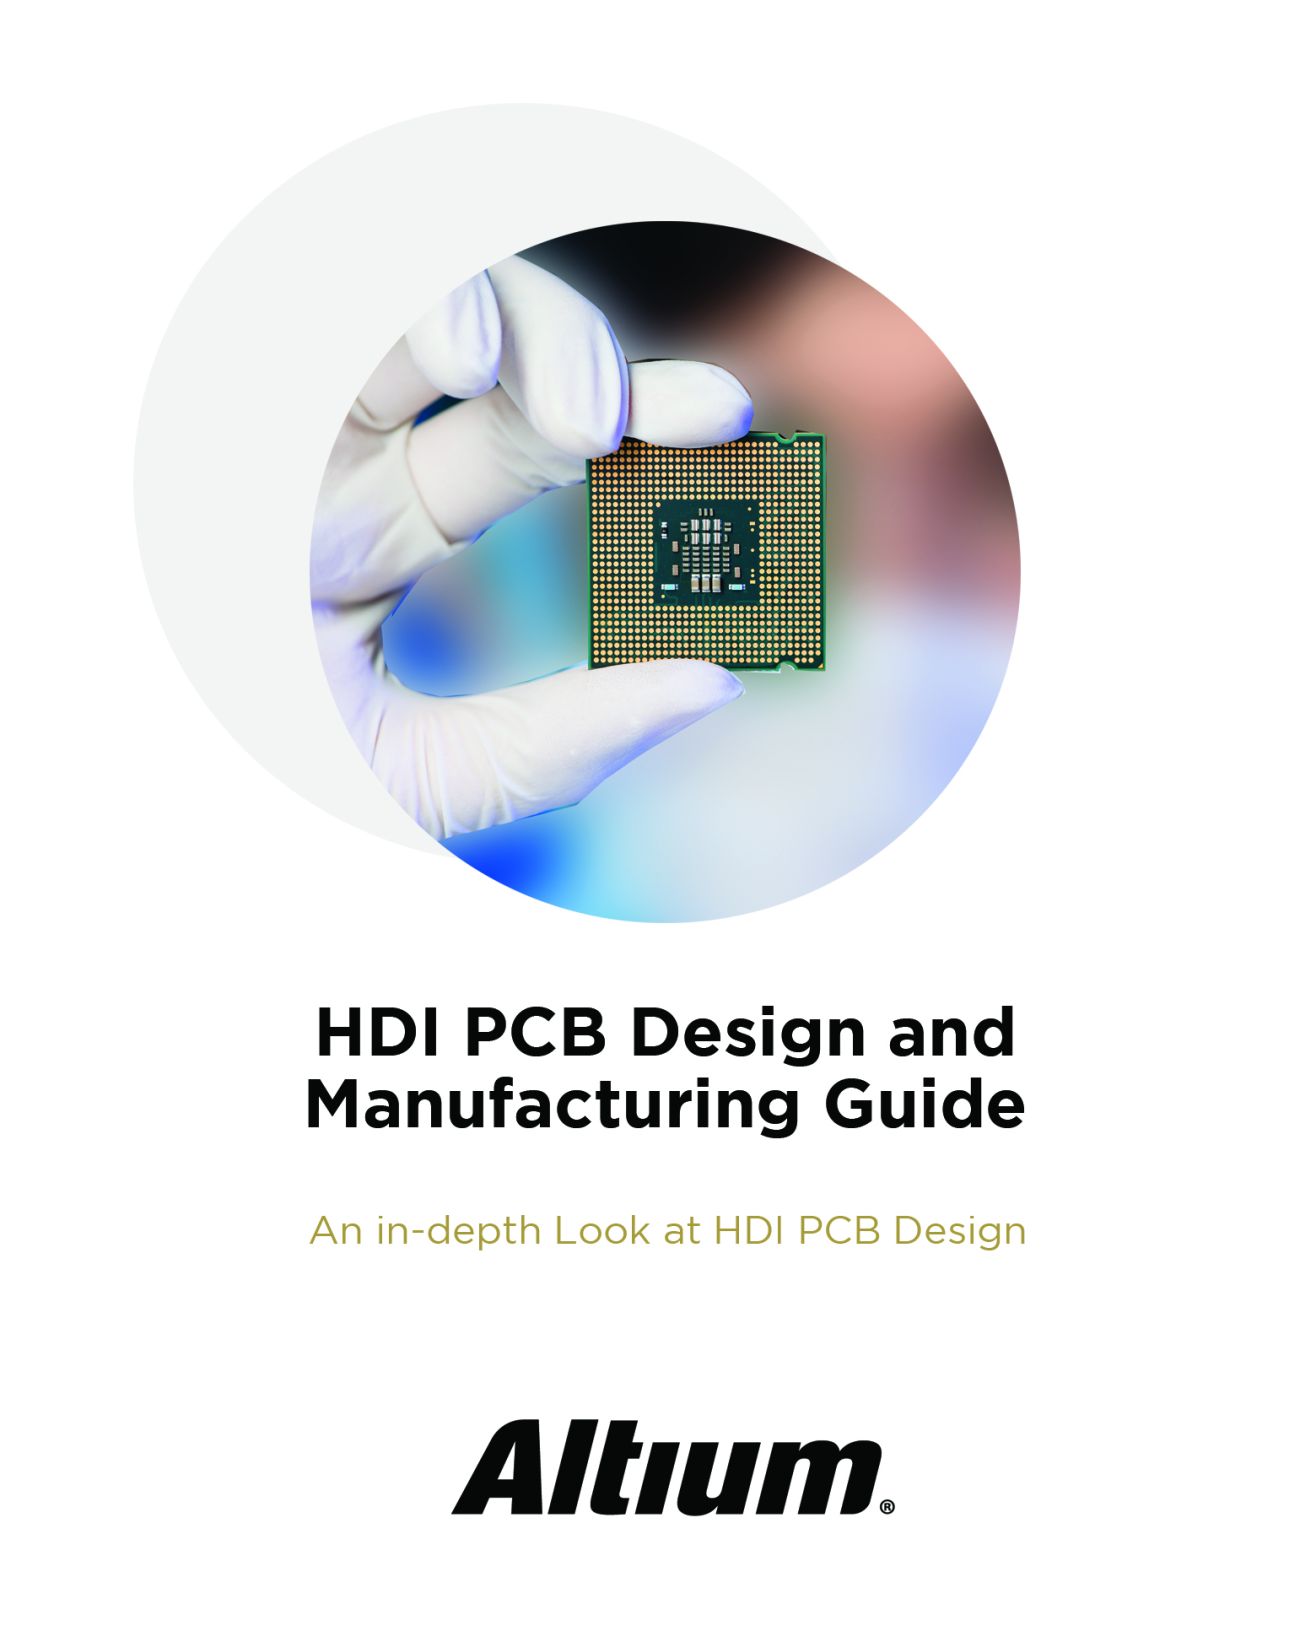 Guida alla progettazione e alla produzione PCB HDI